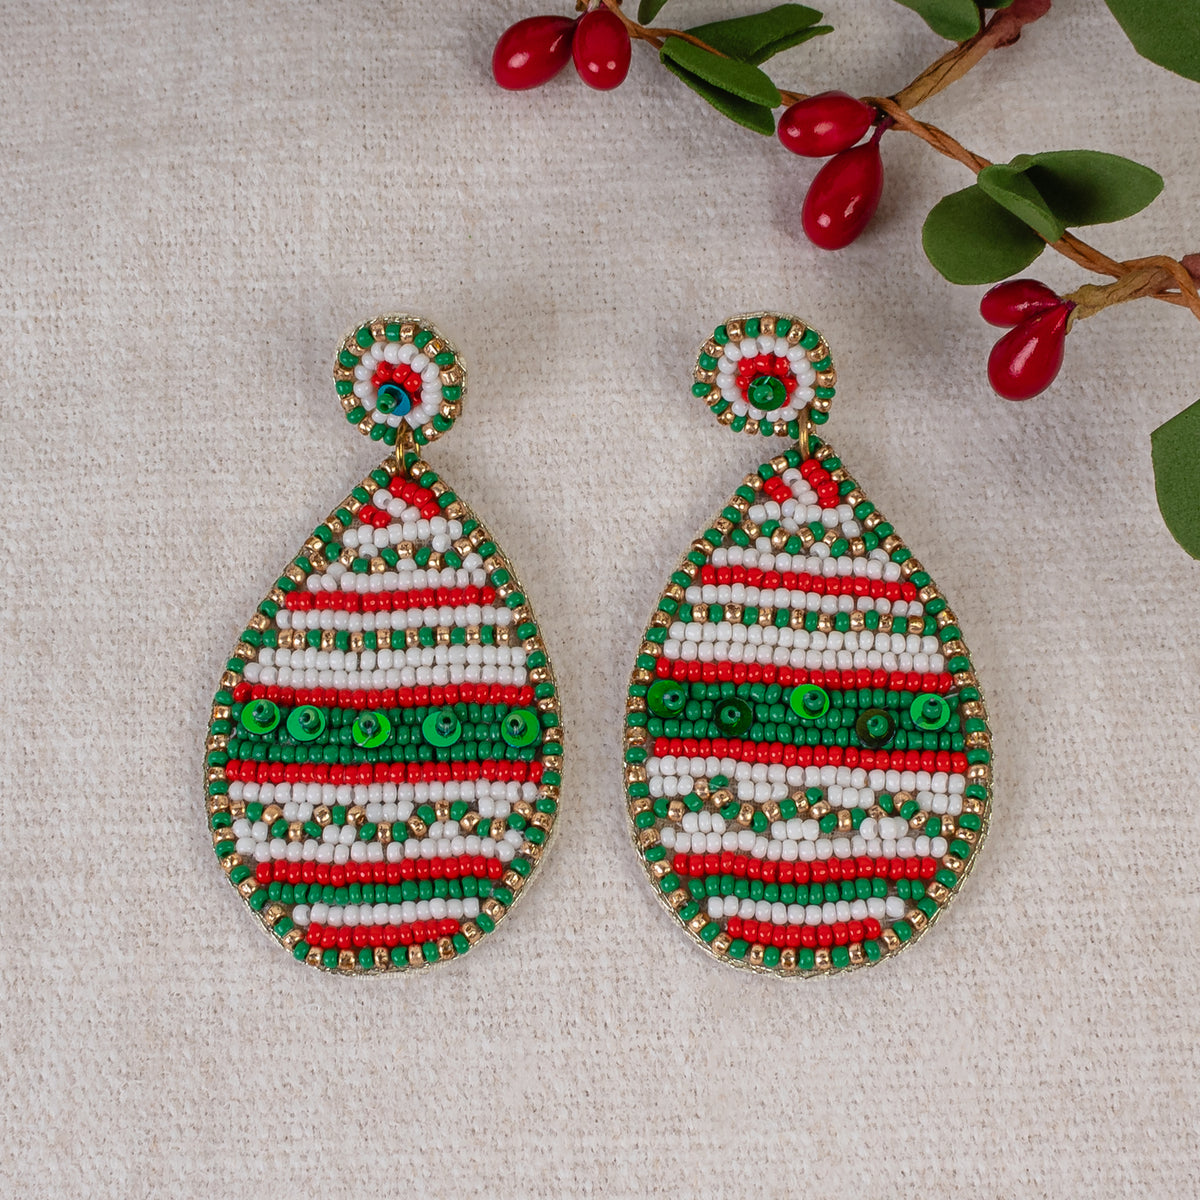 1564 - Beaded Teardrop Earrings - Red, Green, & White